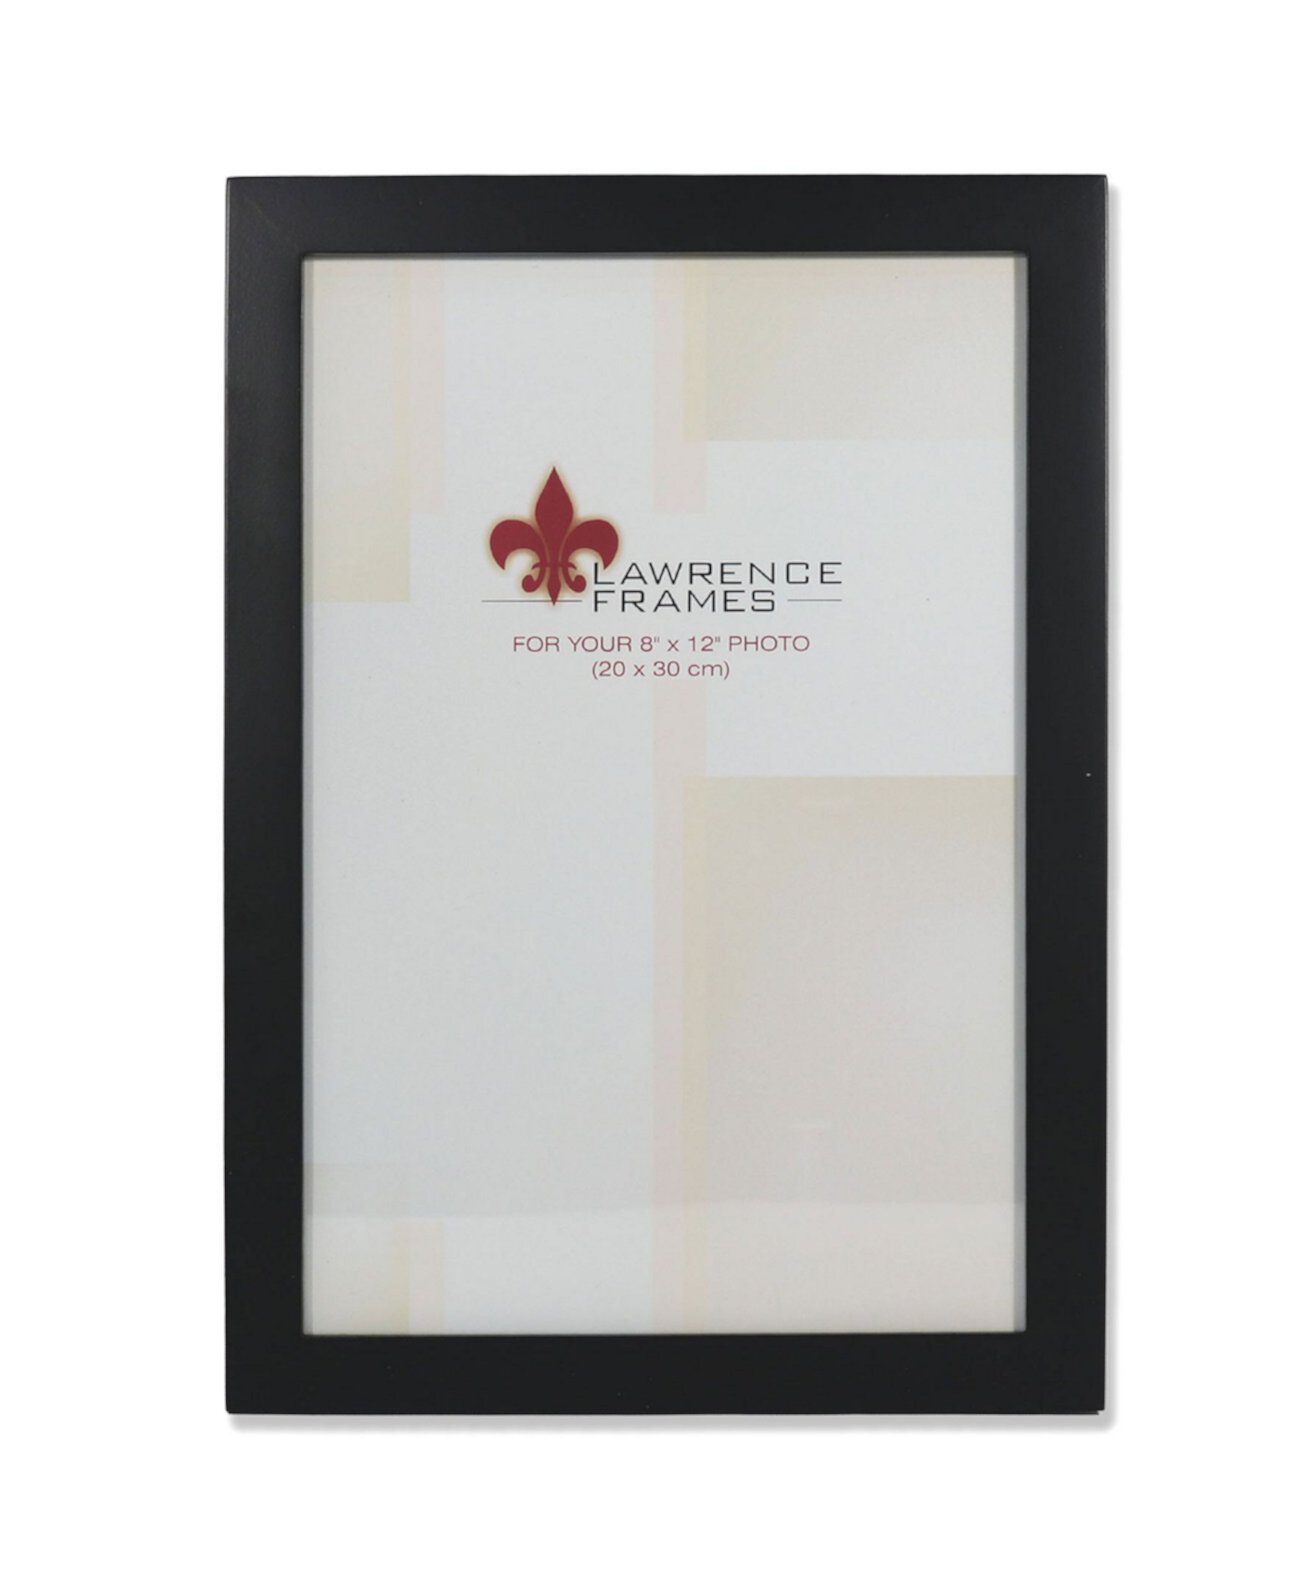 Рамка для картины из черного дерева - 8 x 12 дюймов Lawrence Frames